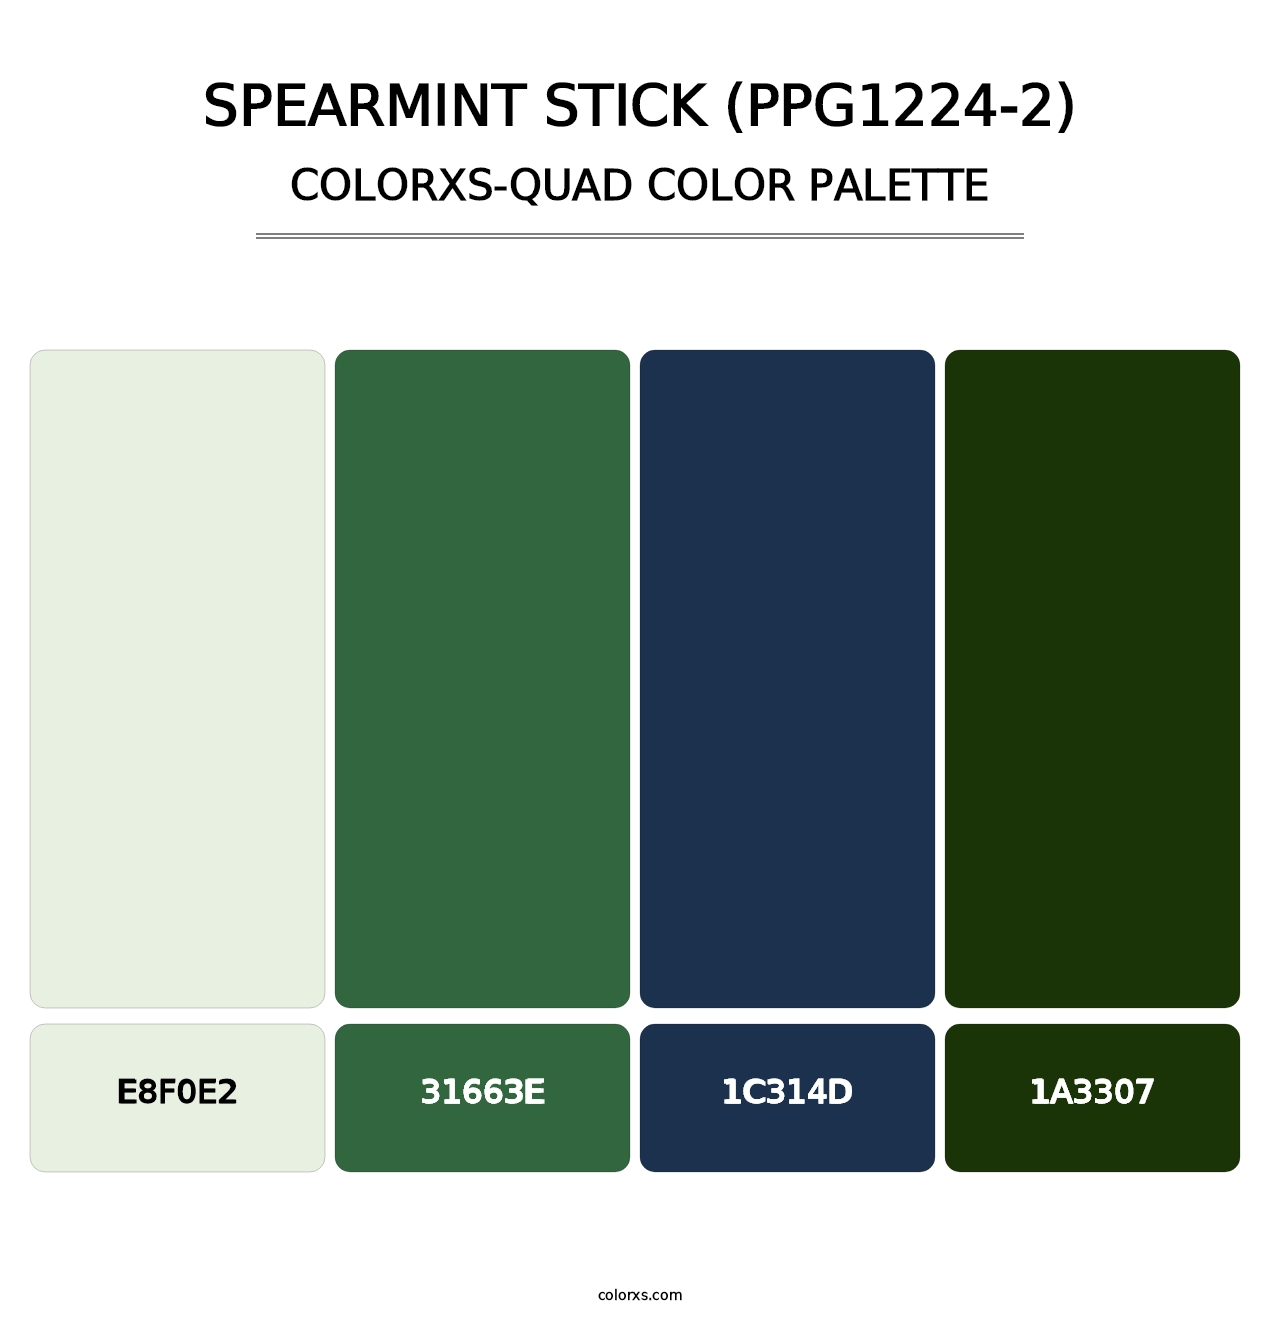 Spearmint Stick (PPG1224-2) - Colorxs Quad Palette